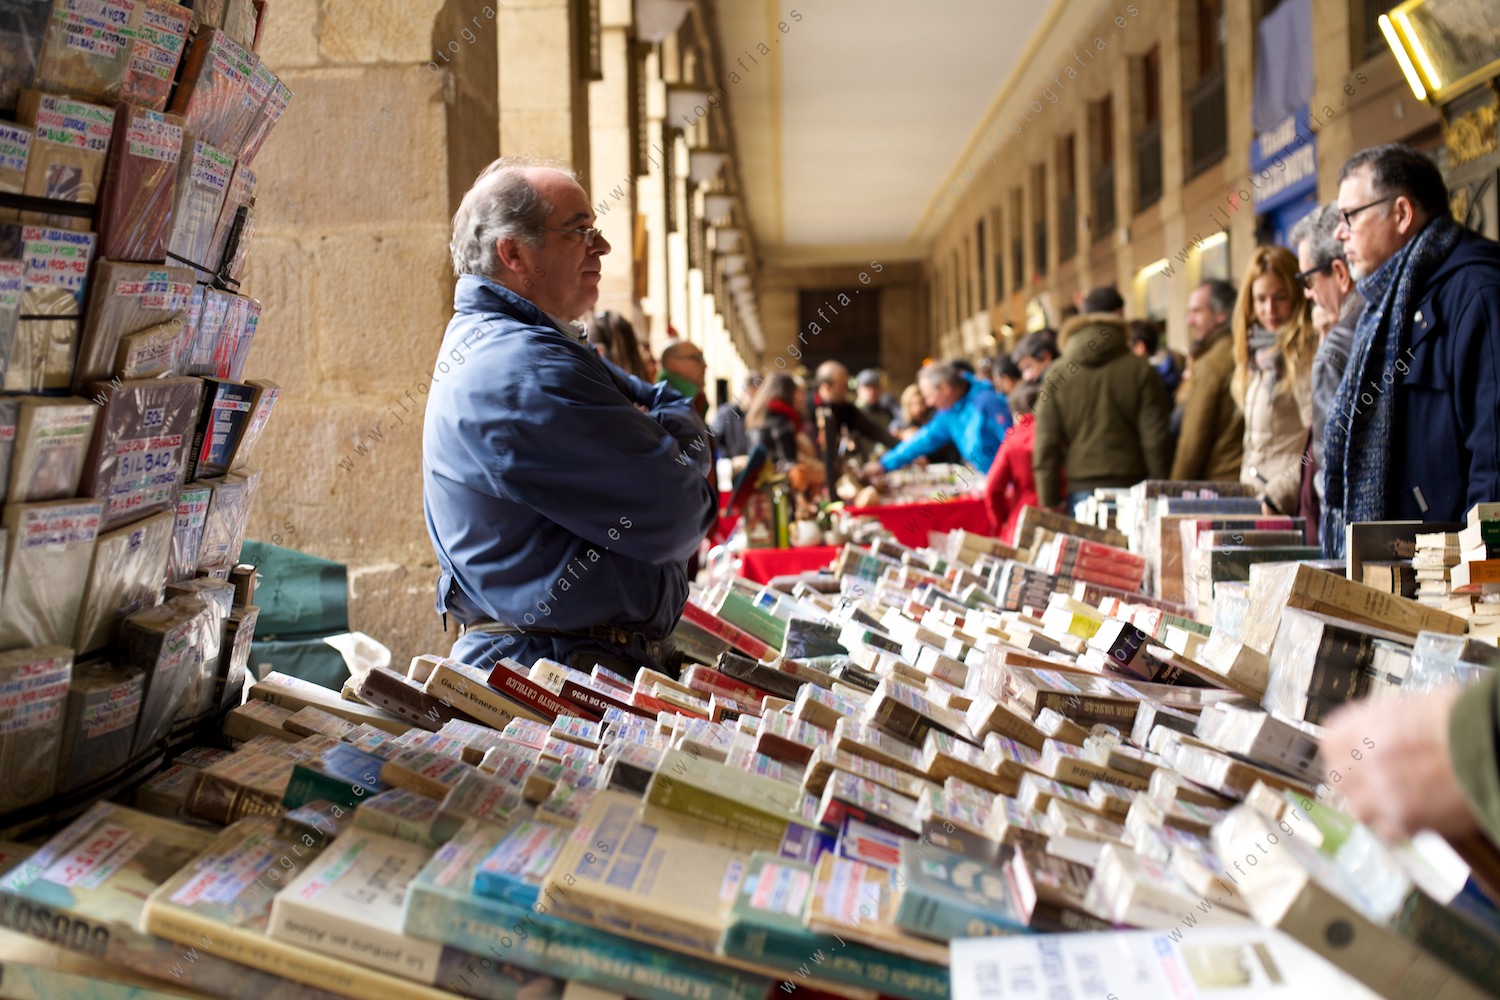 Mercado de la Plaza Nueva de Bilbao con puestos de libros